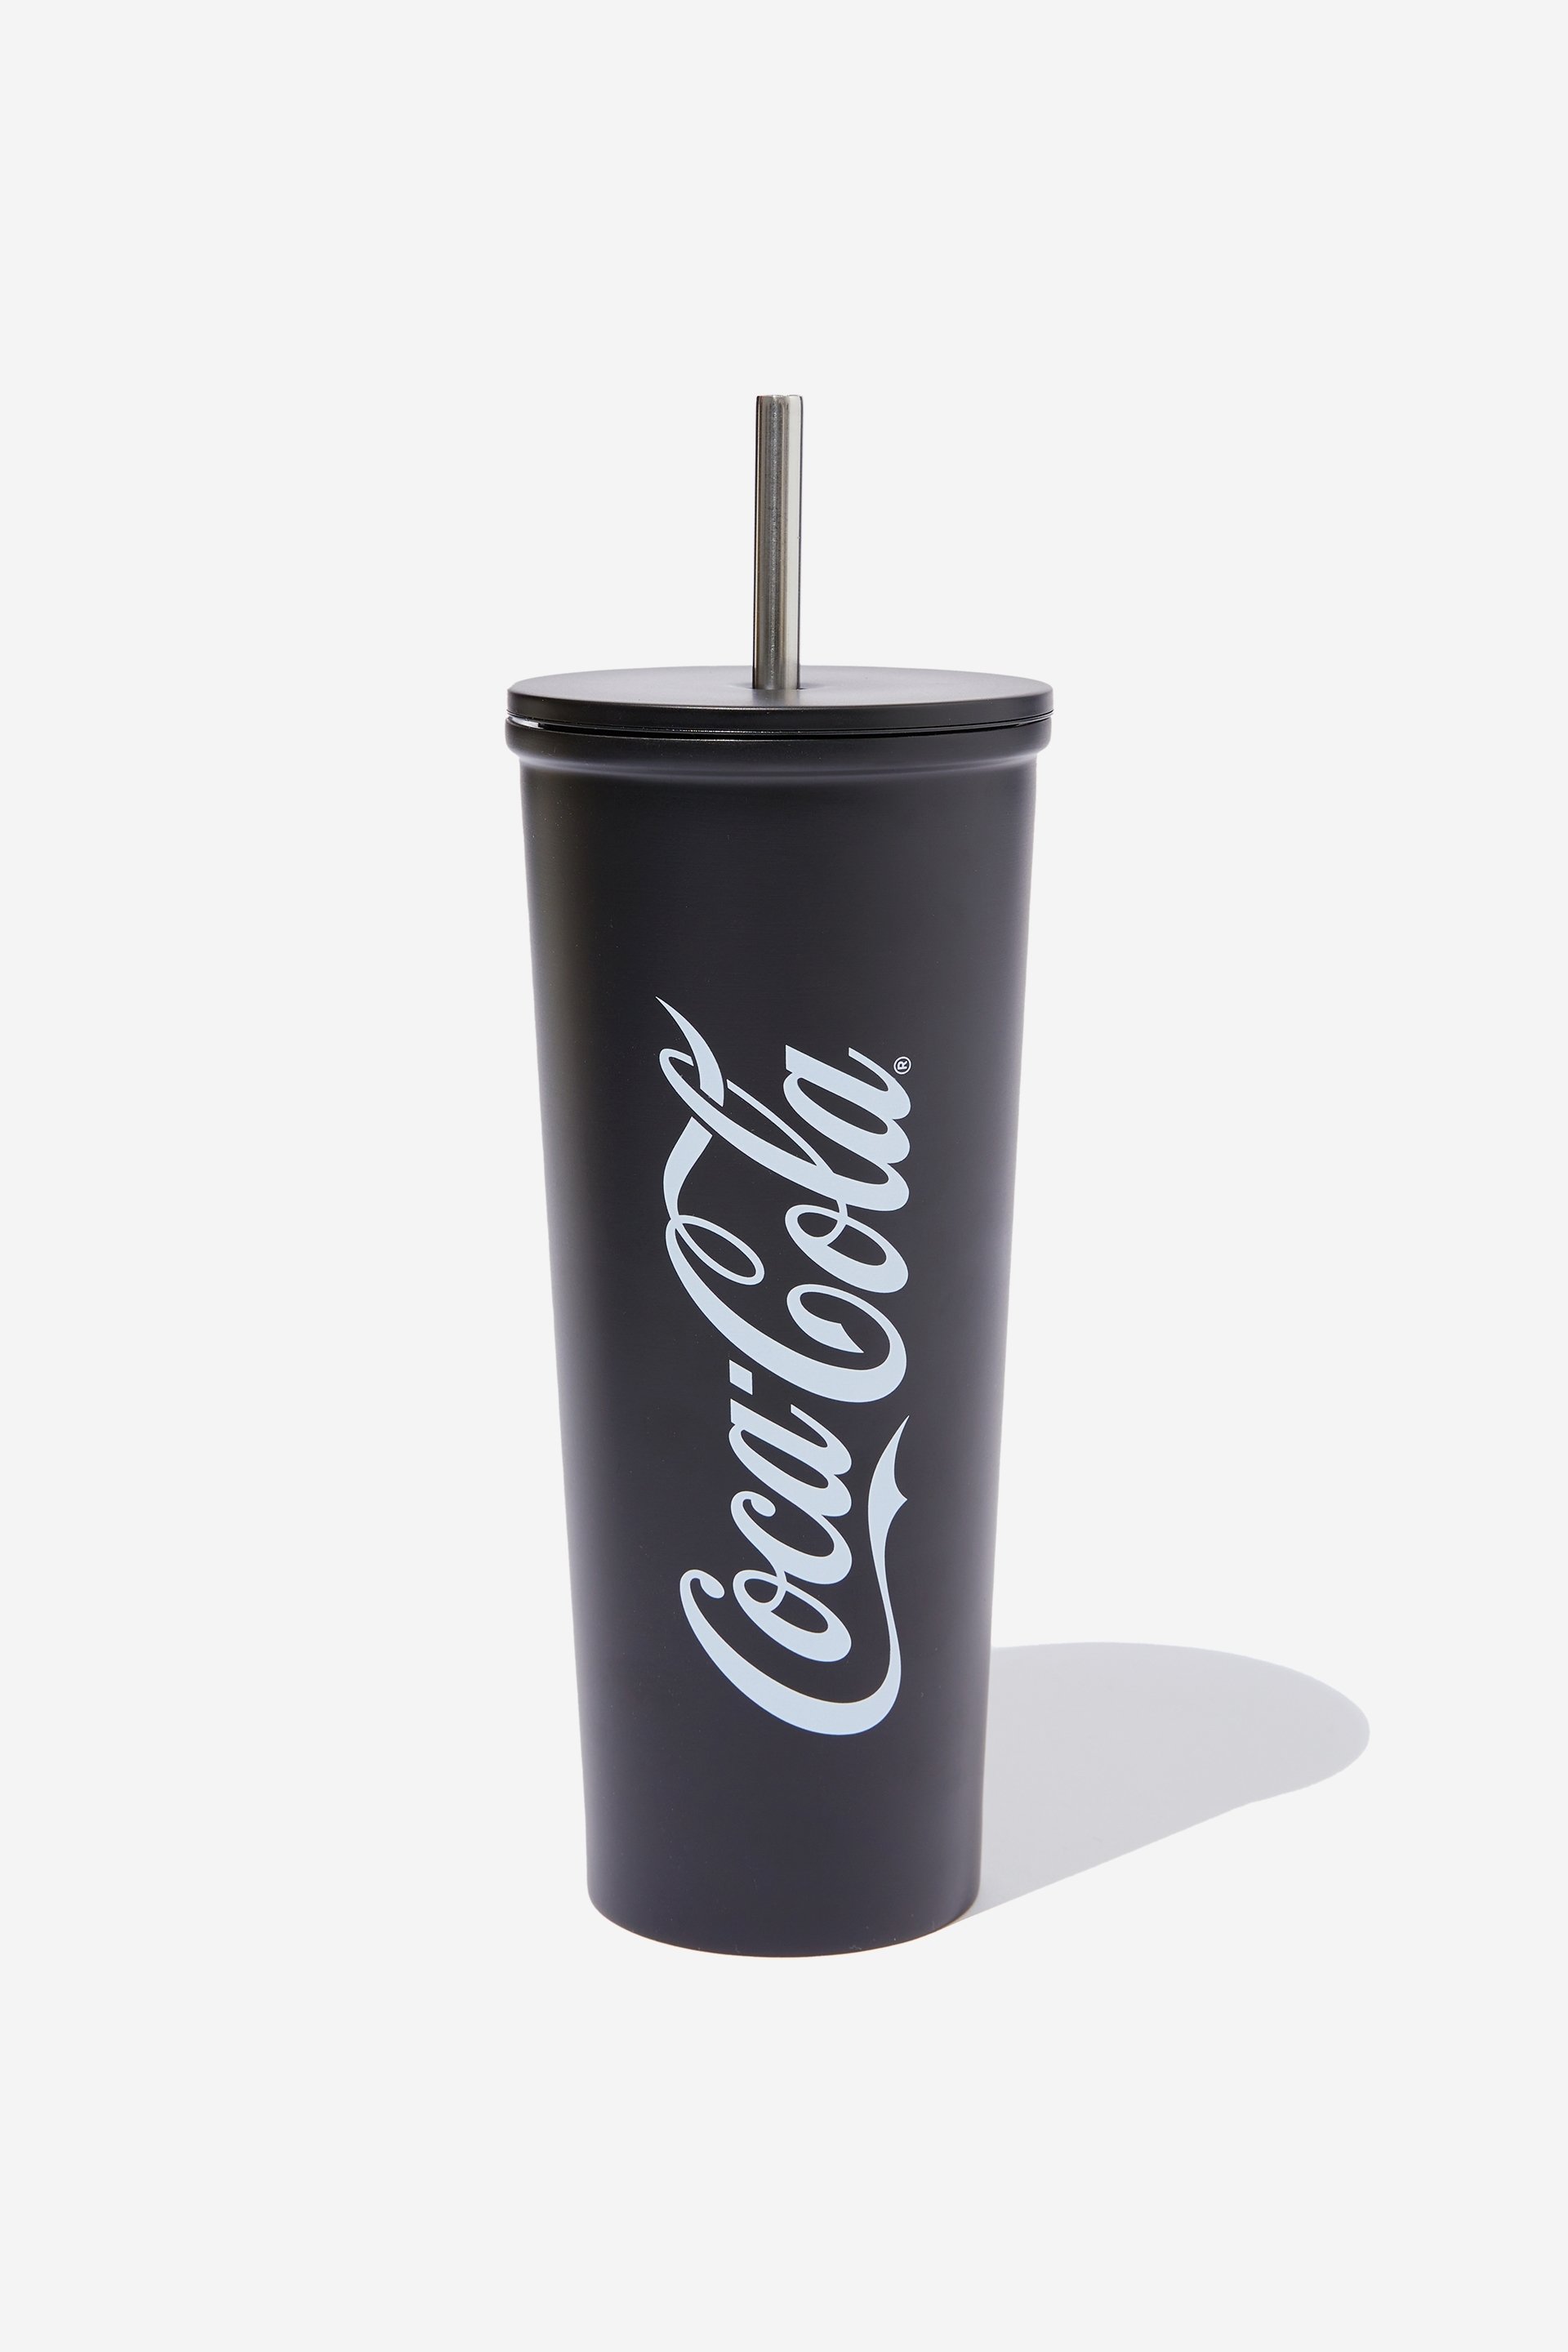 Coca Cola Metal Smoothie Cup